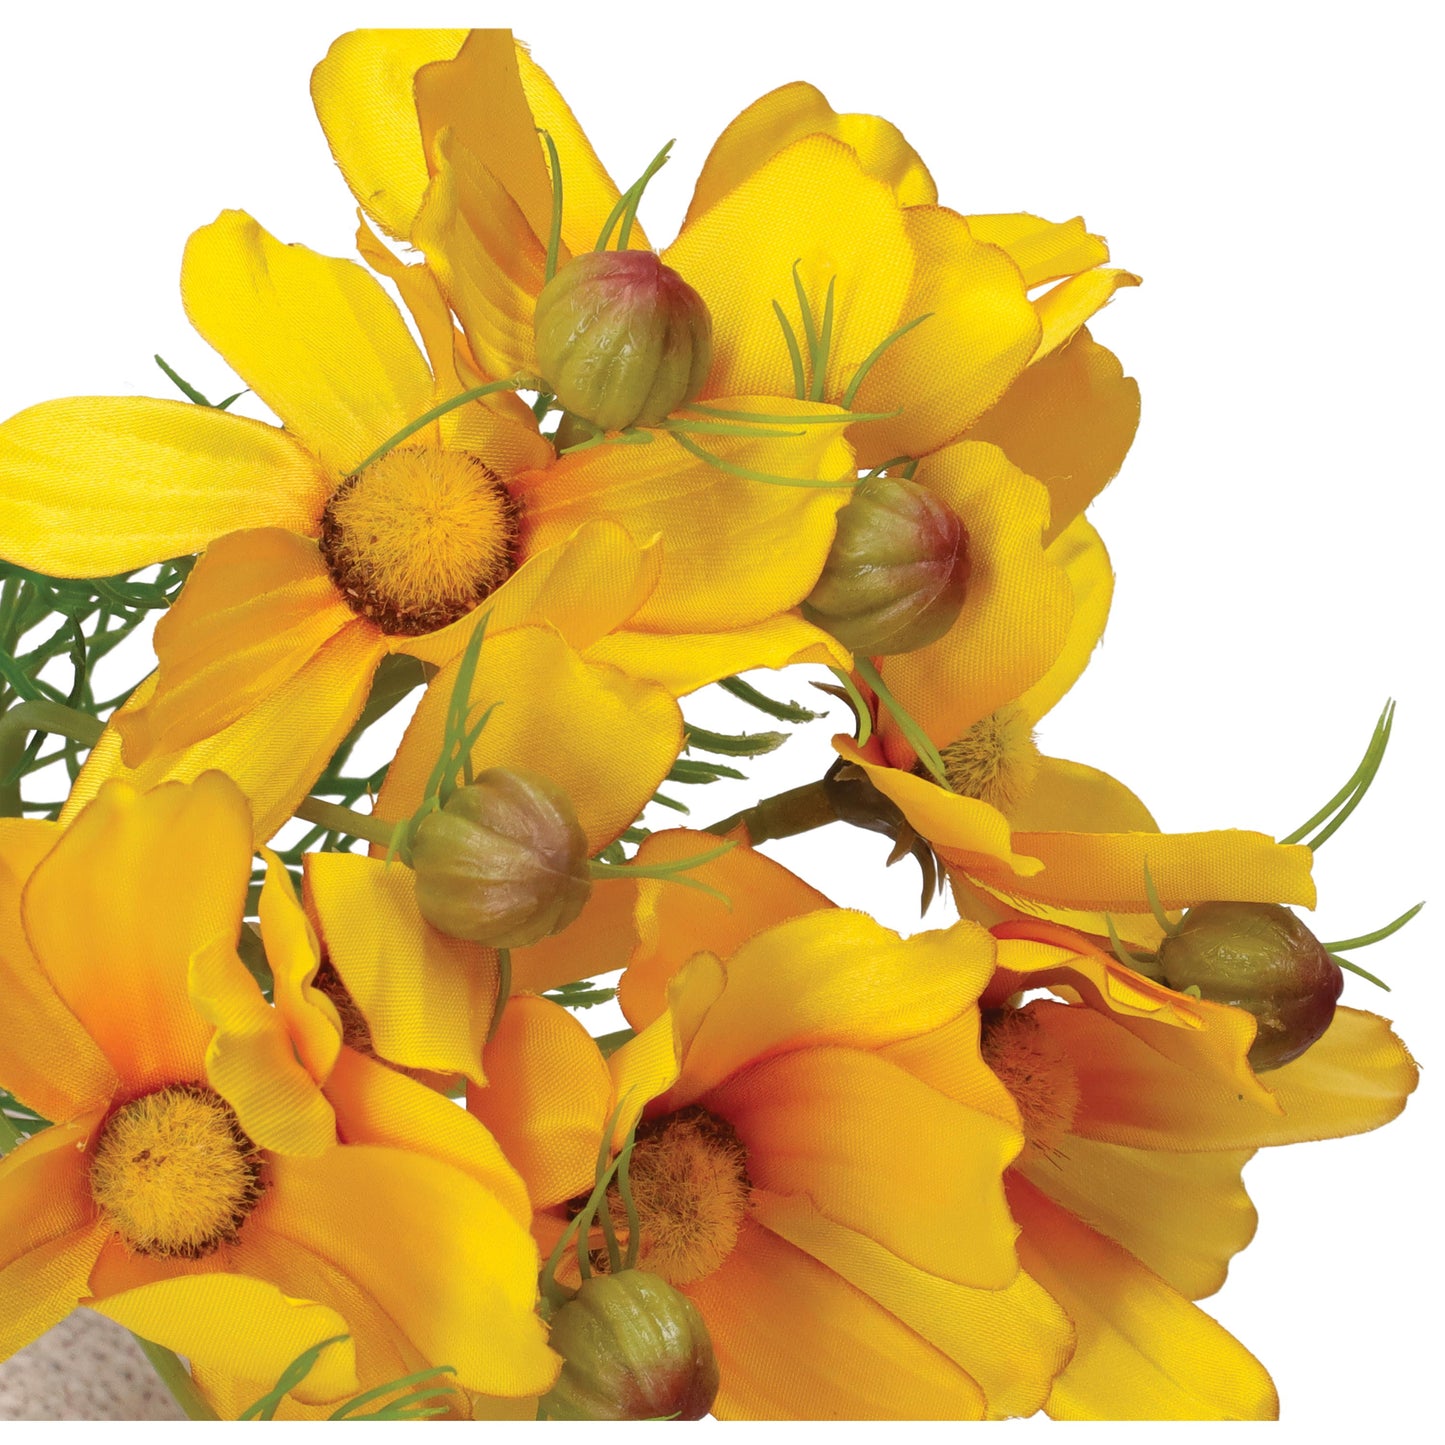 Mazzetto di fiori Cosmos gialli artificiali, petali in tessuto steli in plastica. Dimensioni: altezza cm 26. In negozio e online su tuttochic.it